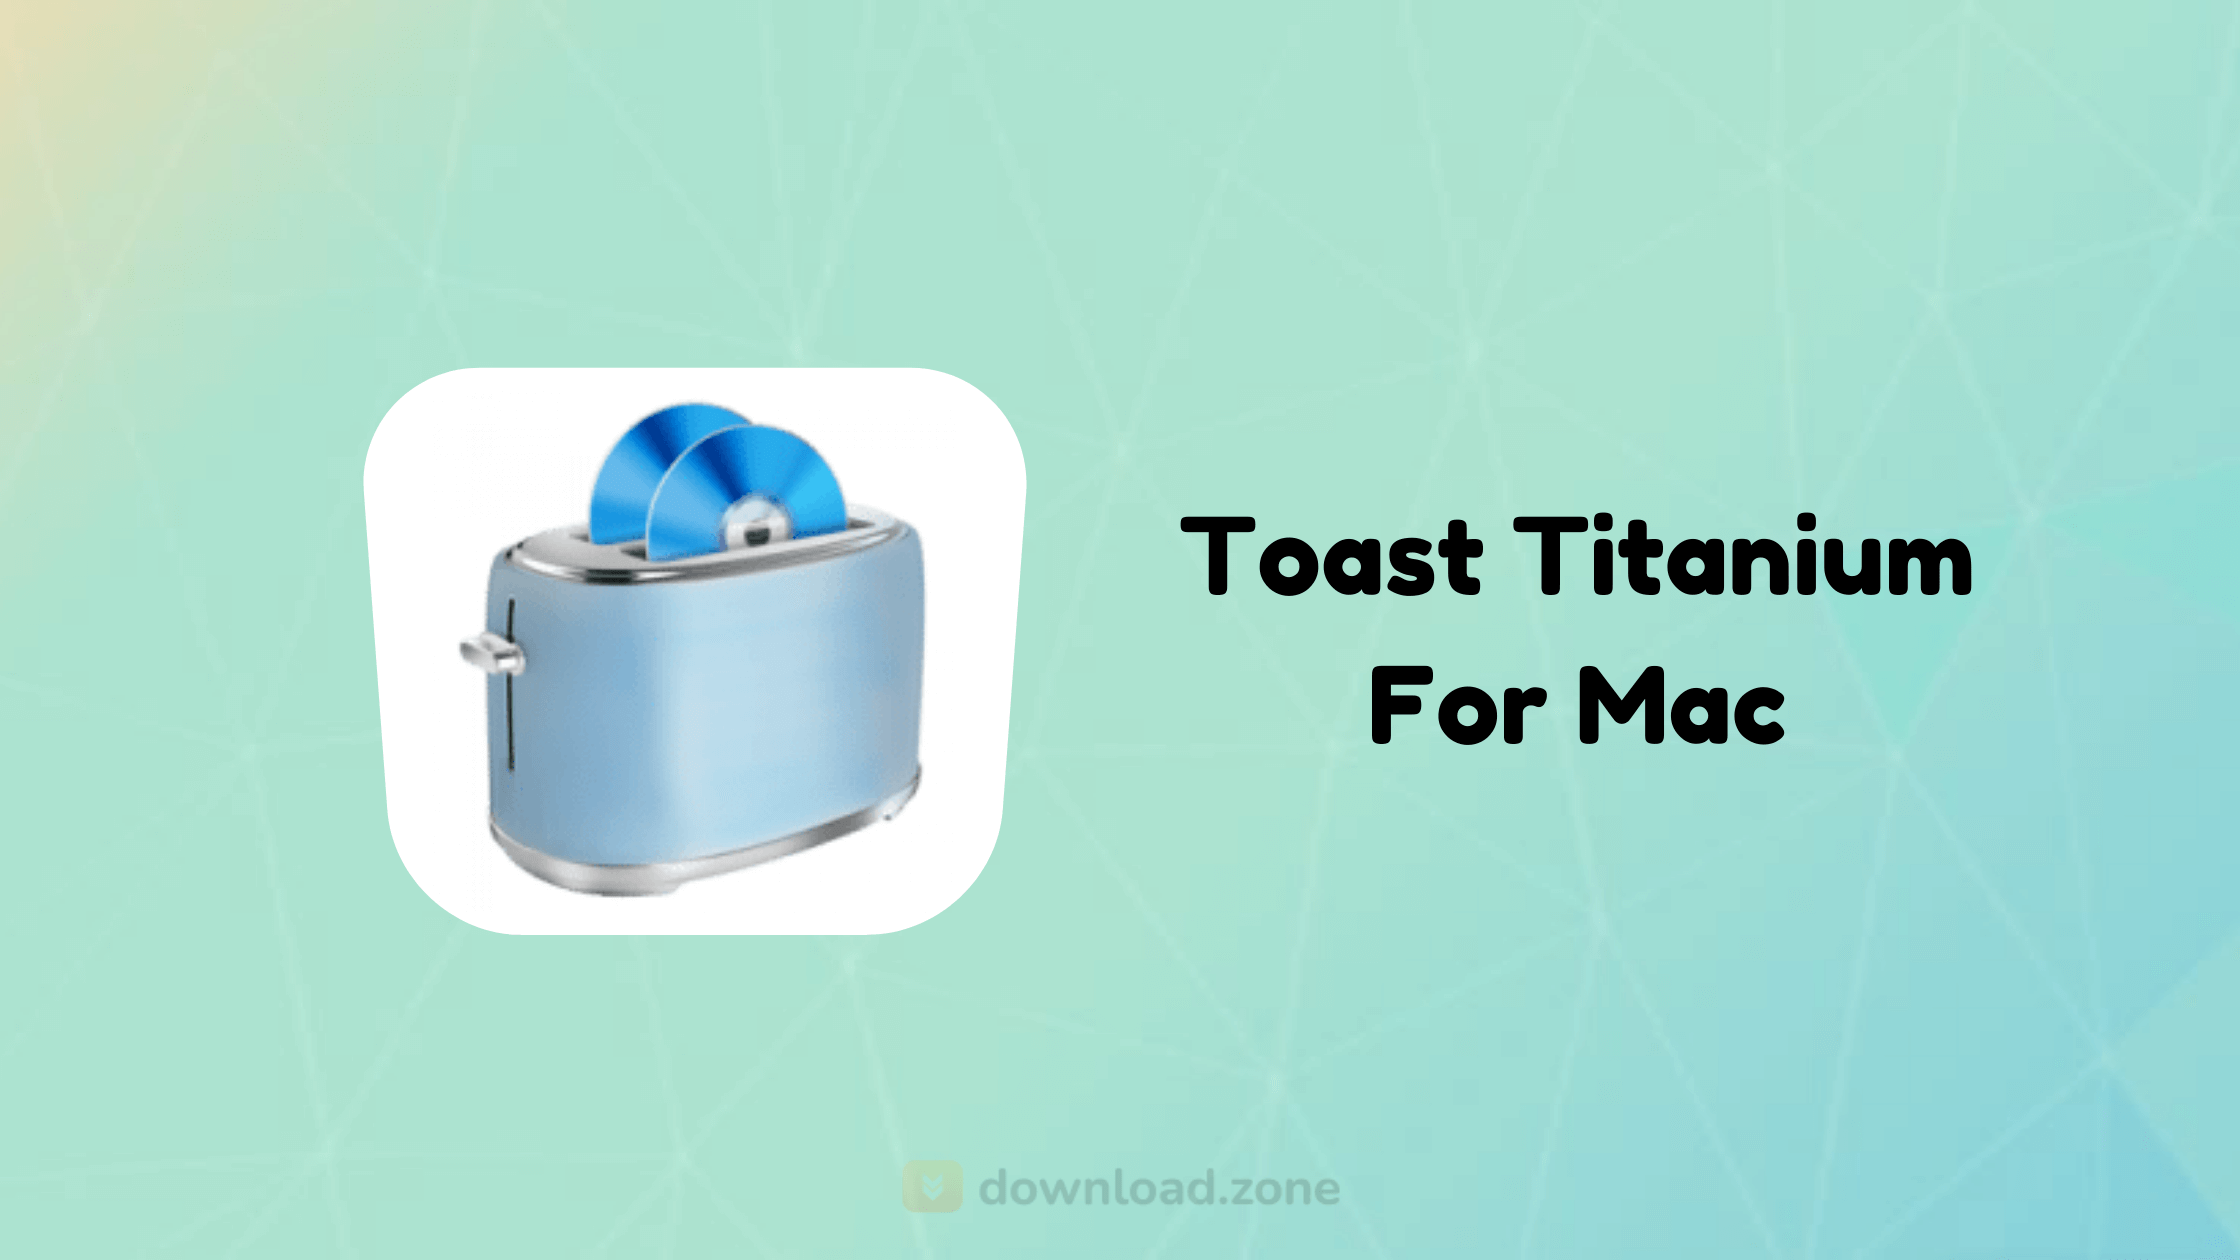 toast titanium free download for mac 10.6 8